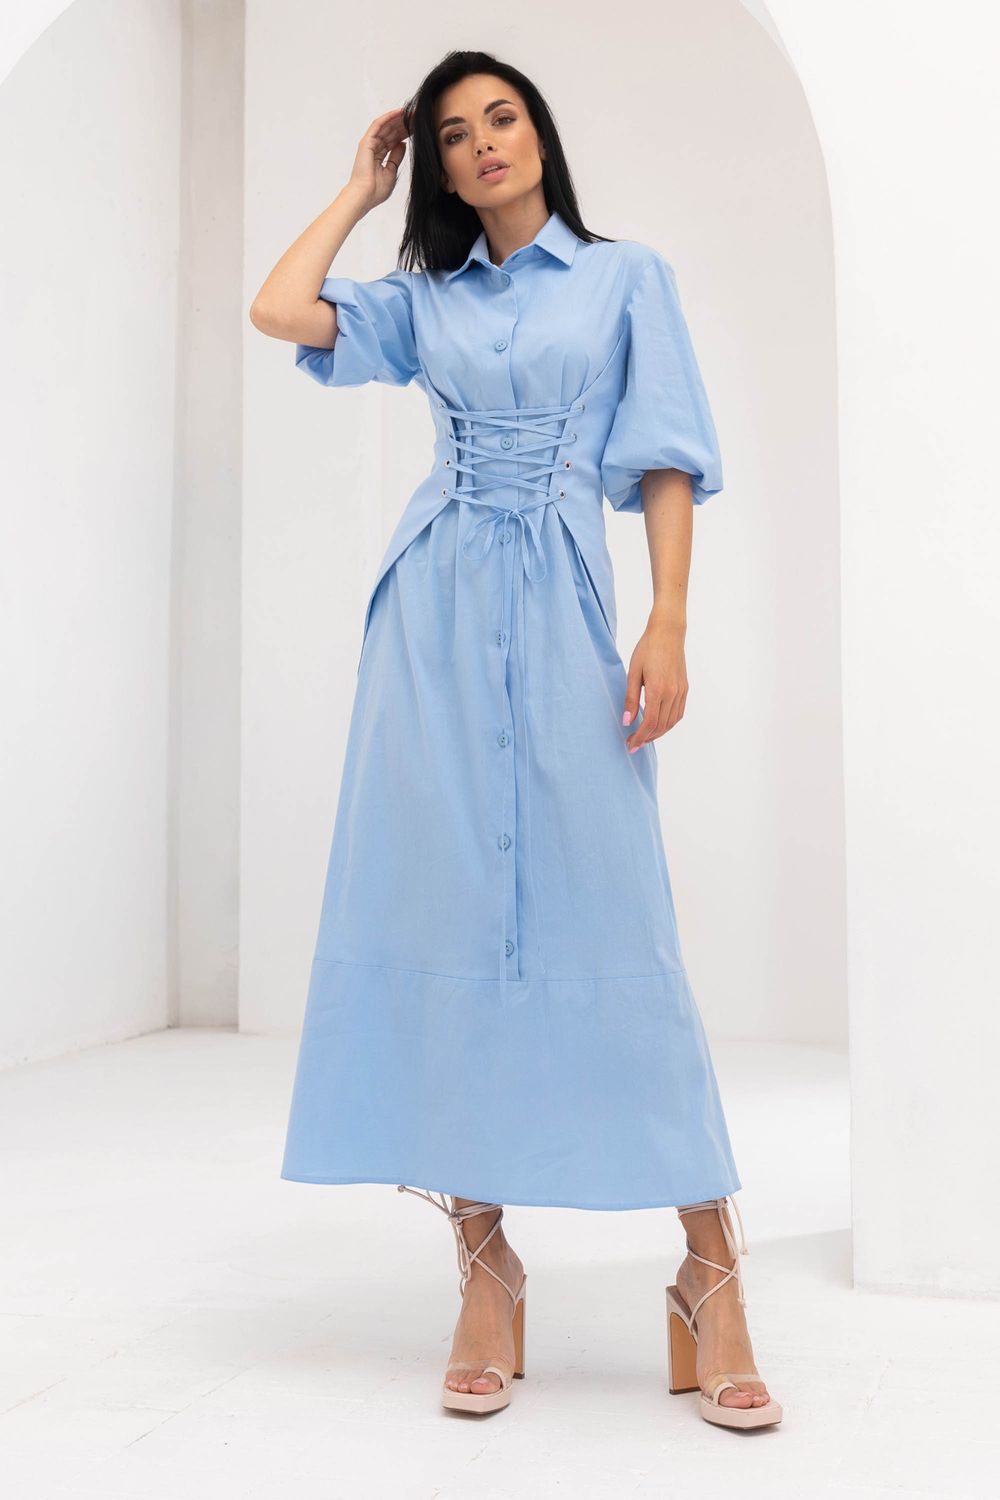 Довге літнє плаття сорочка блакитного кольору - фото